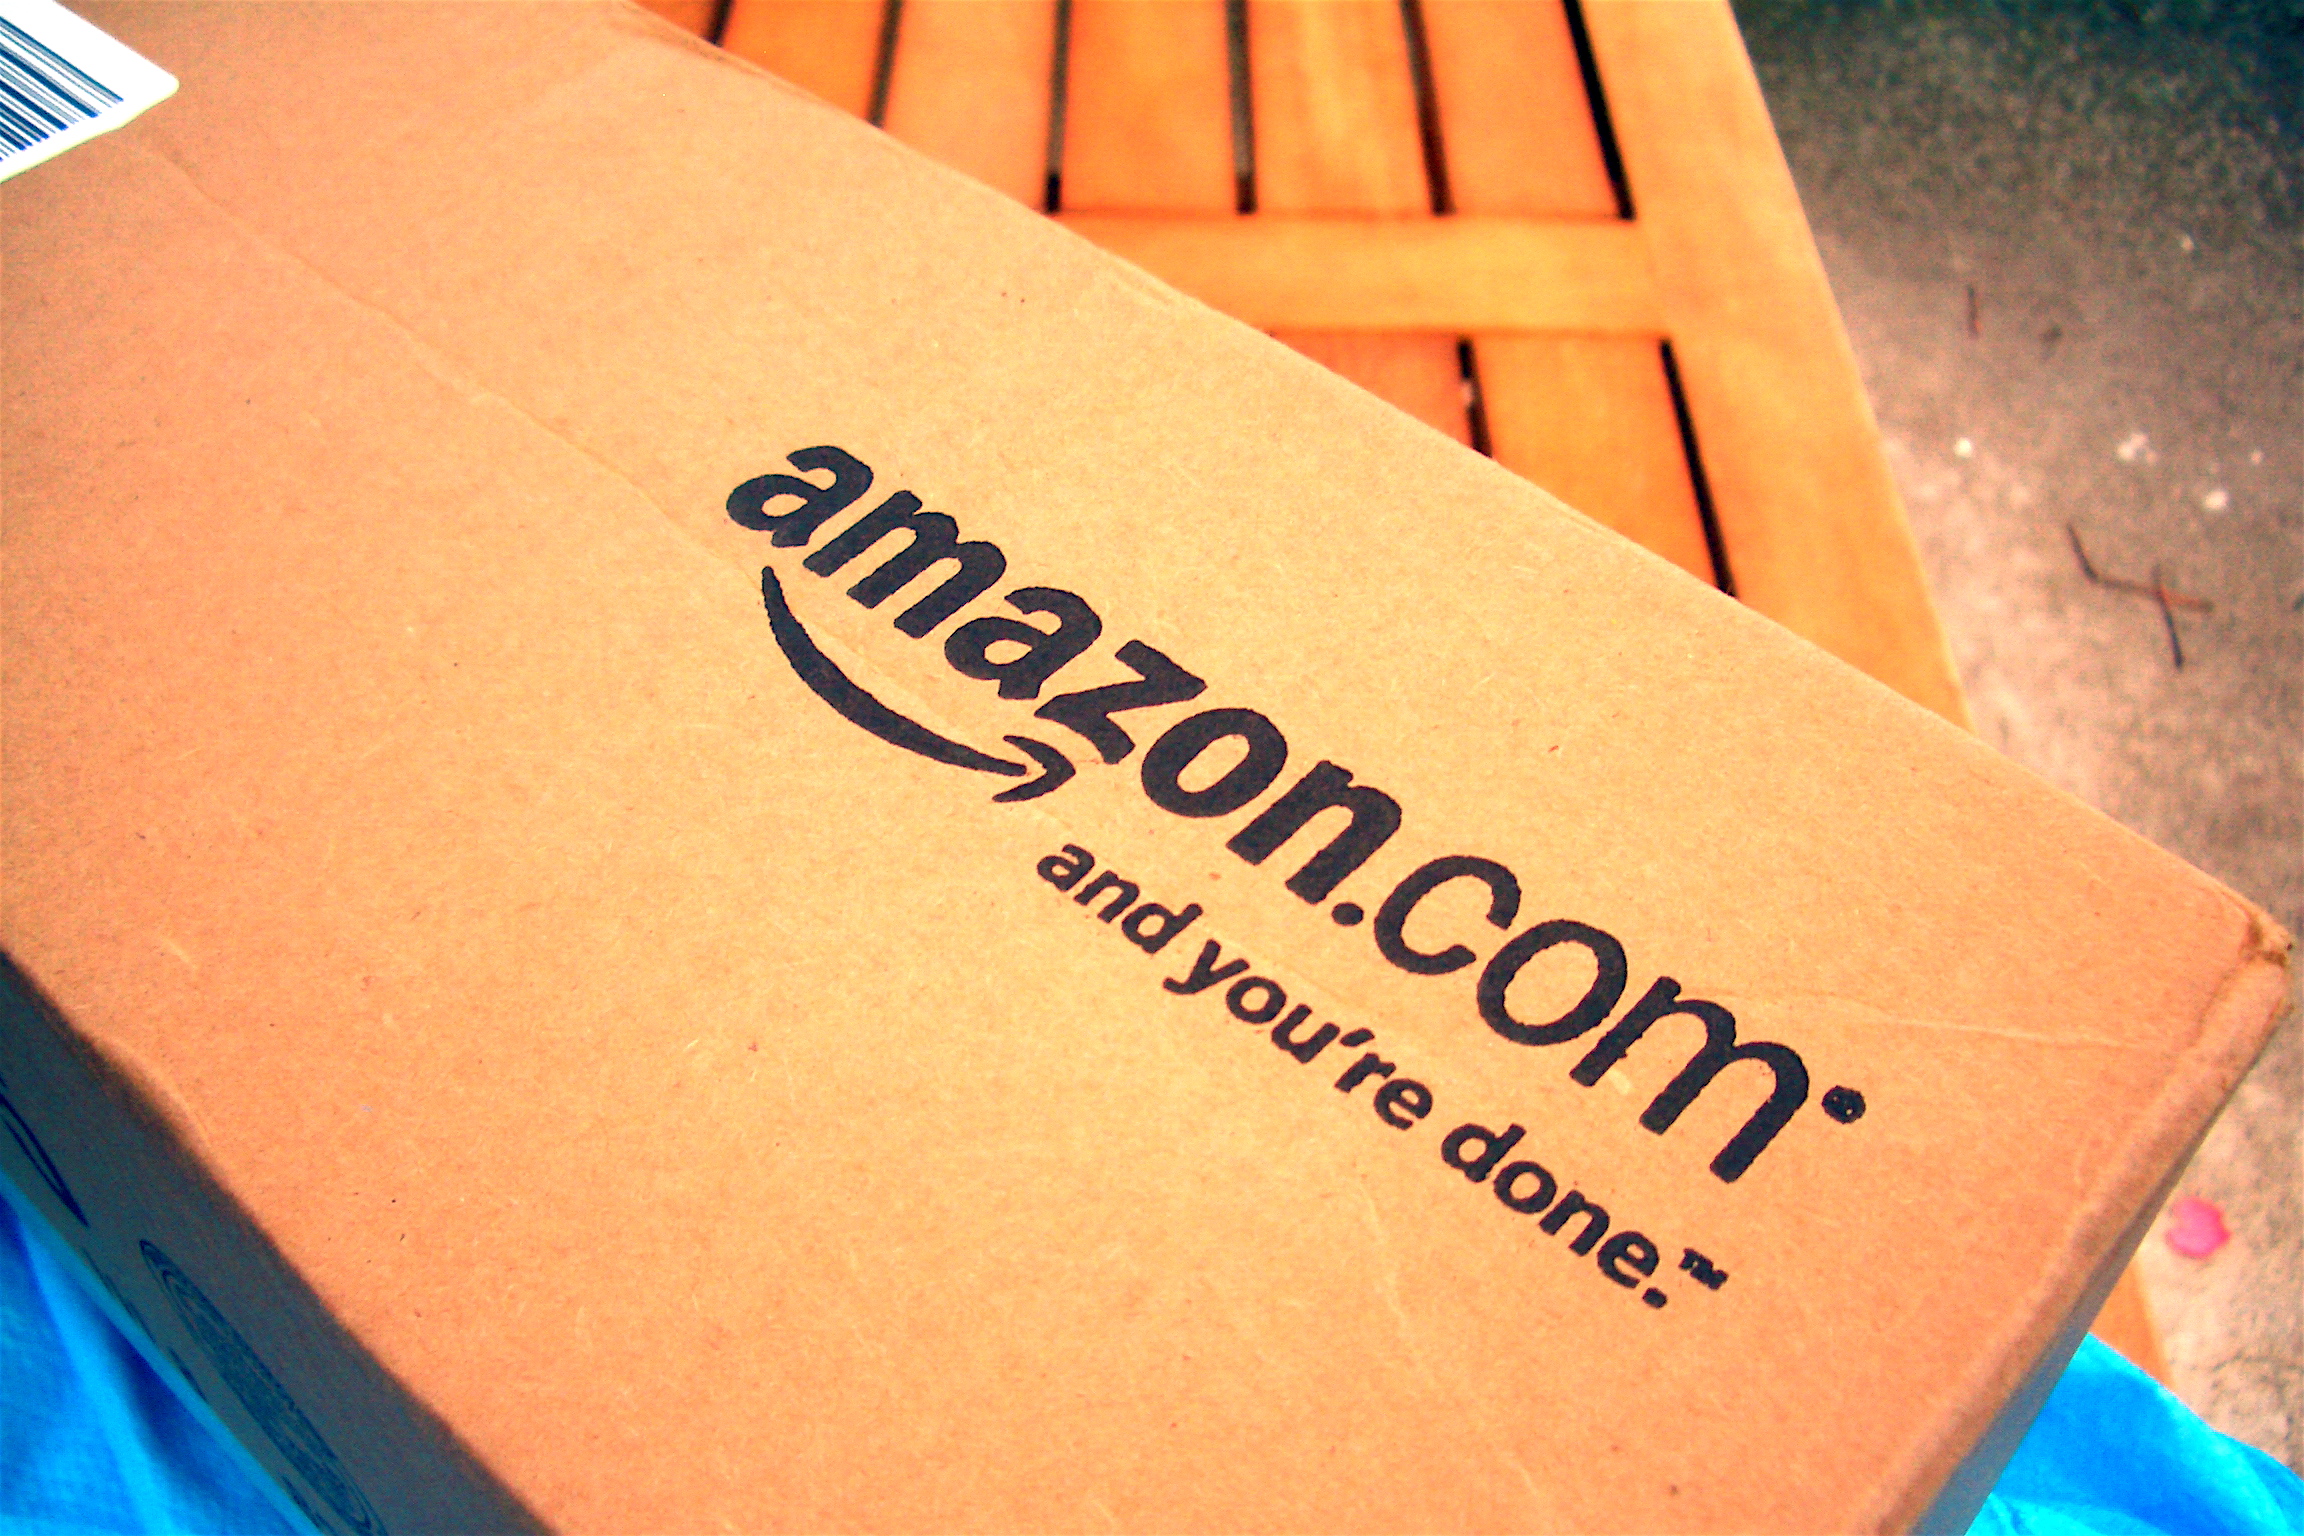 Bezos posle 20 godina kupio jednu jedinu akciju Amazona